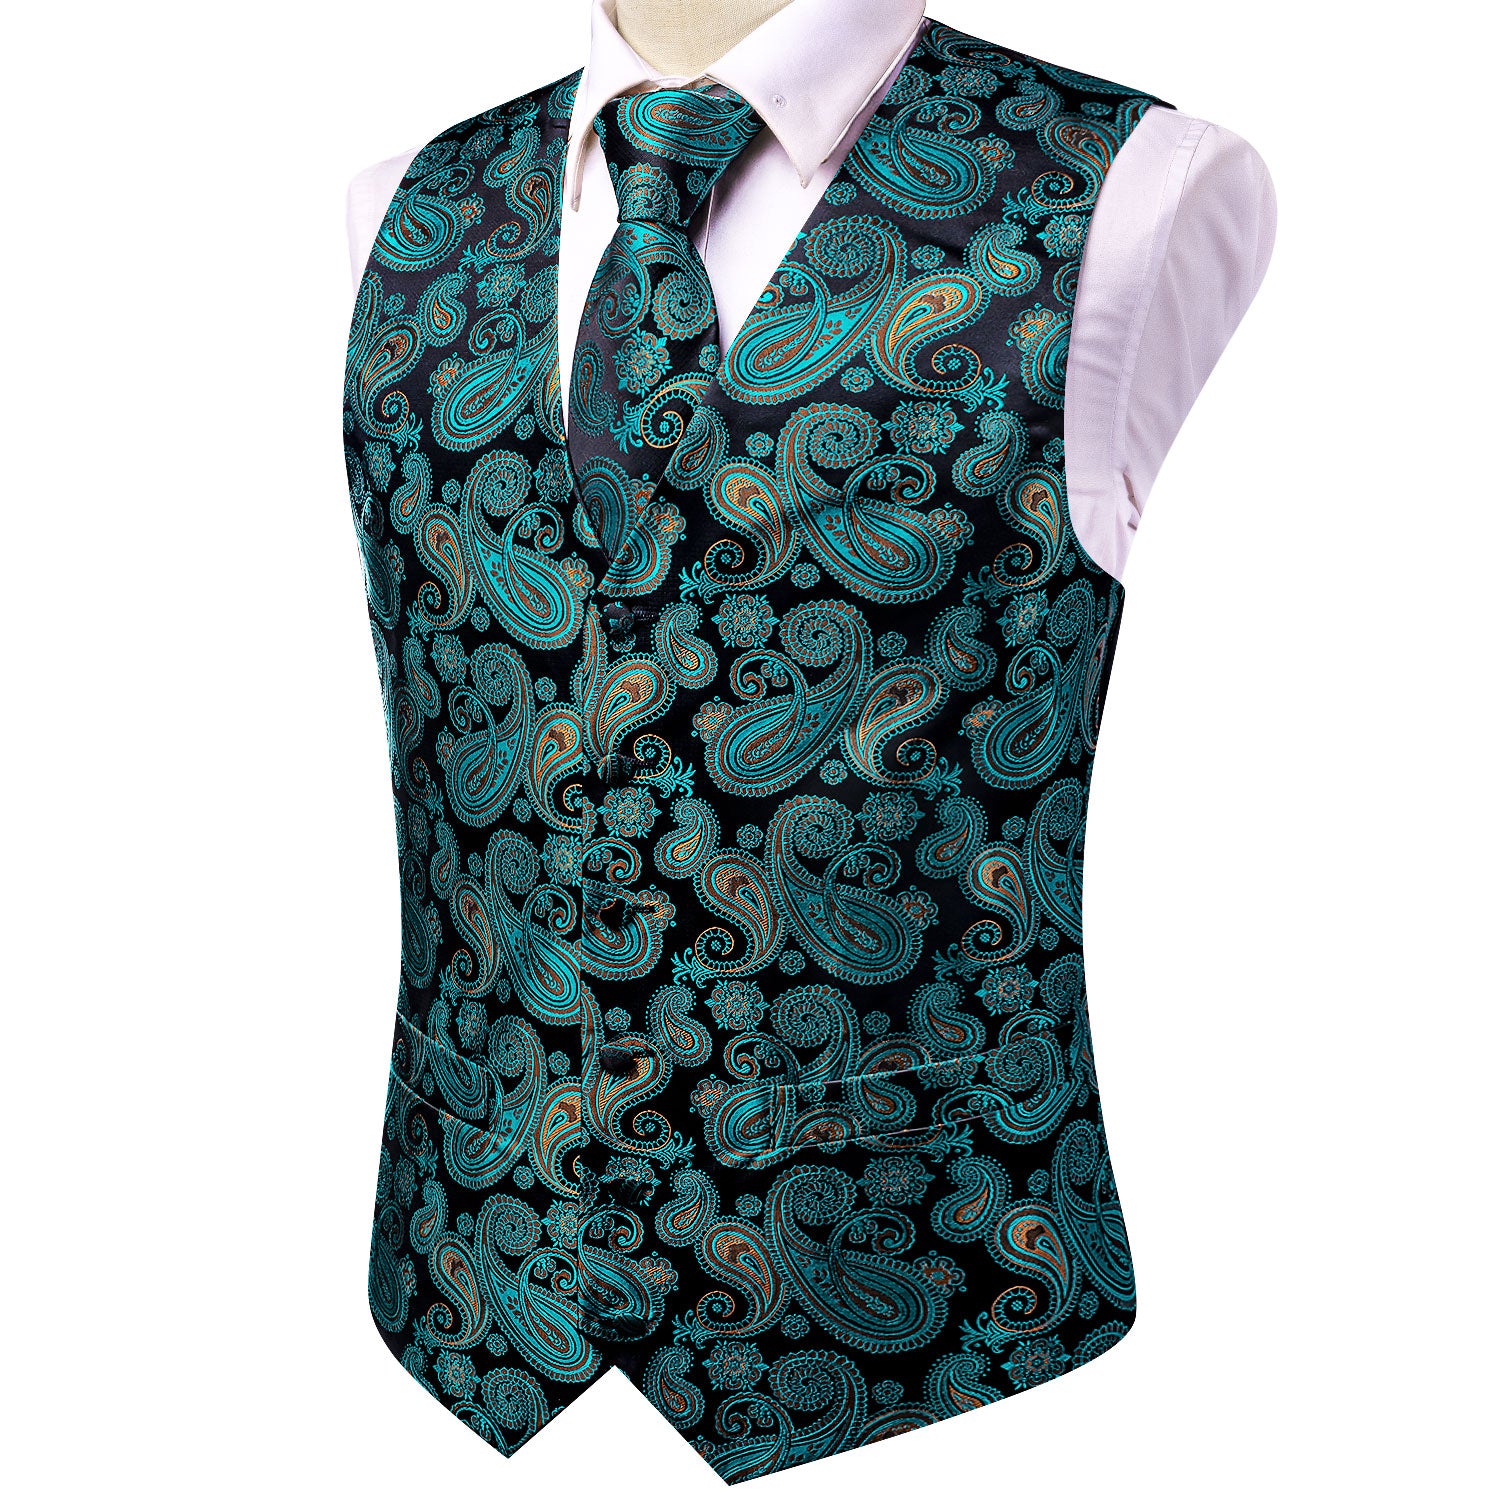 New Black Teal Paisley Silk Men's Vest Hanky Cufflinks Tie Set Waistcoat Suit Set